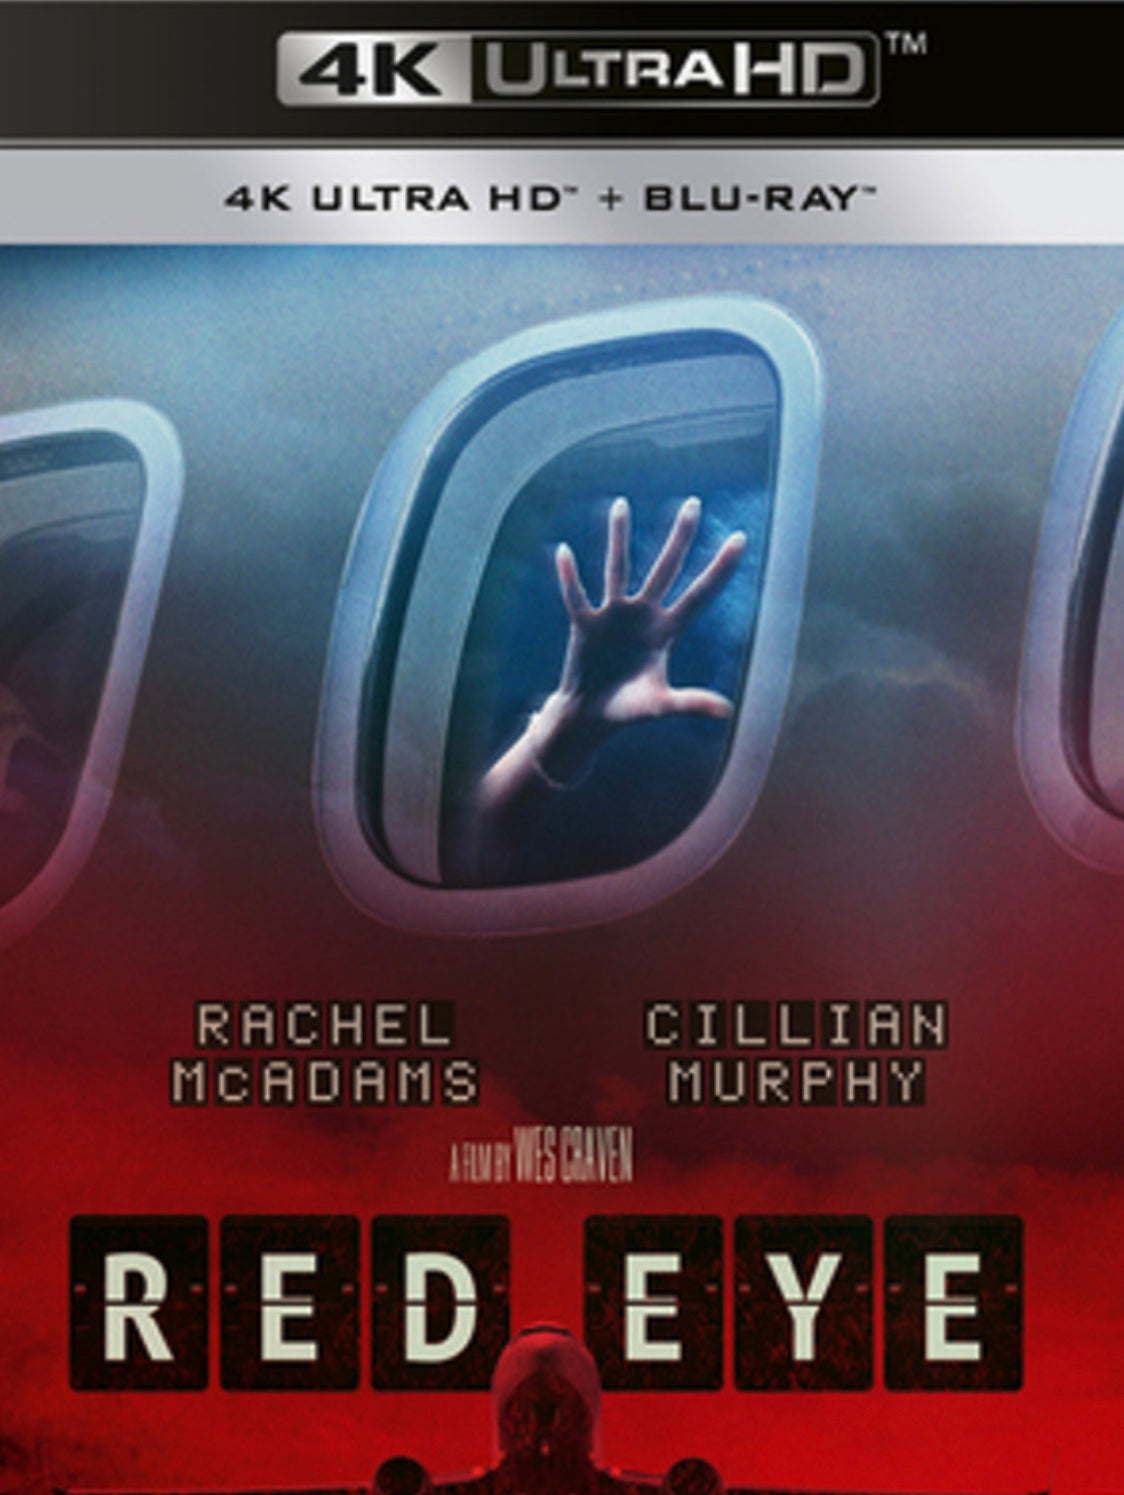 Red Eye (2005) Vudu 4K code